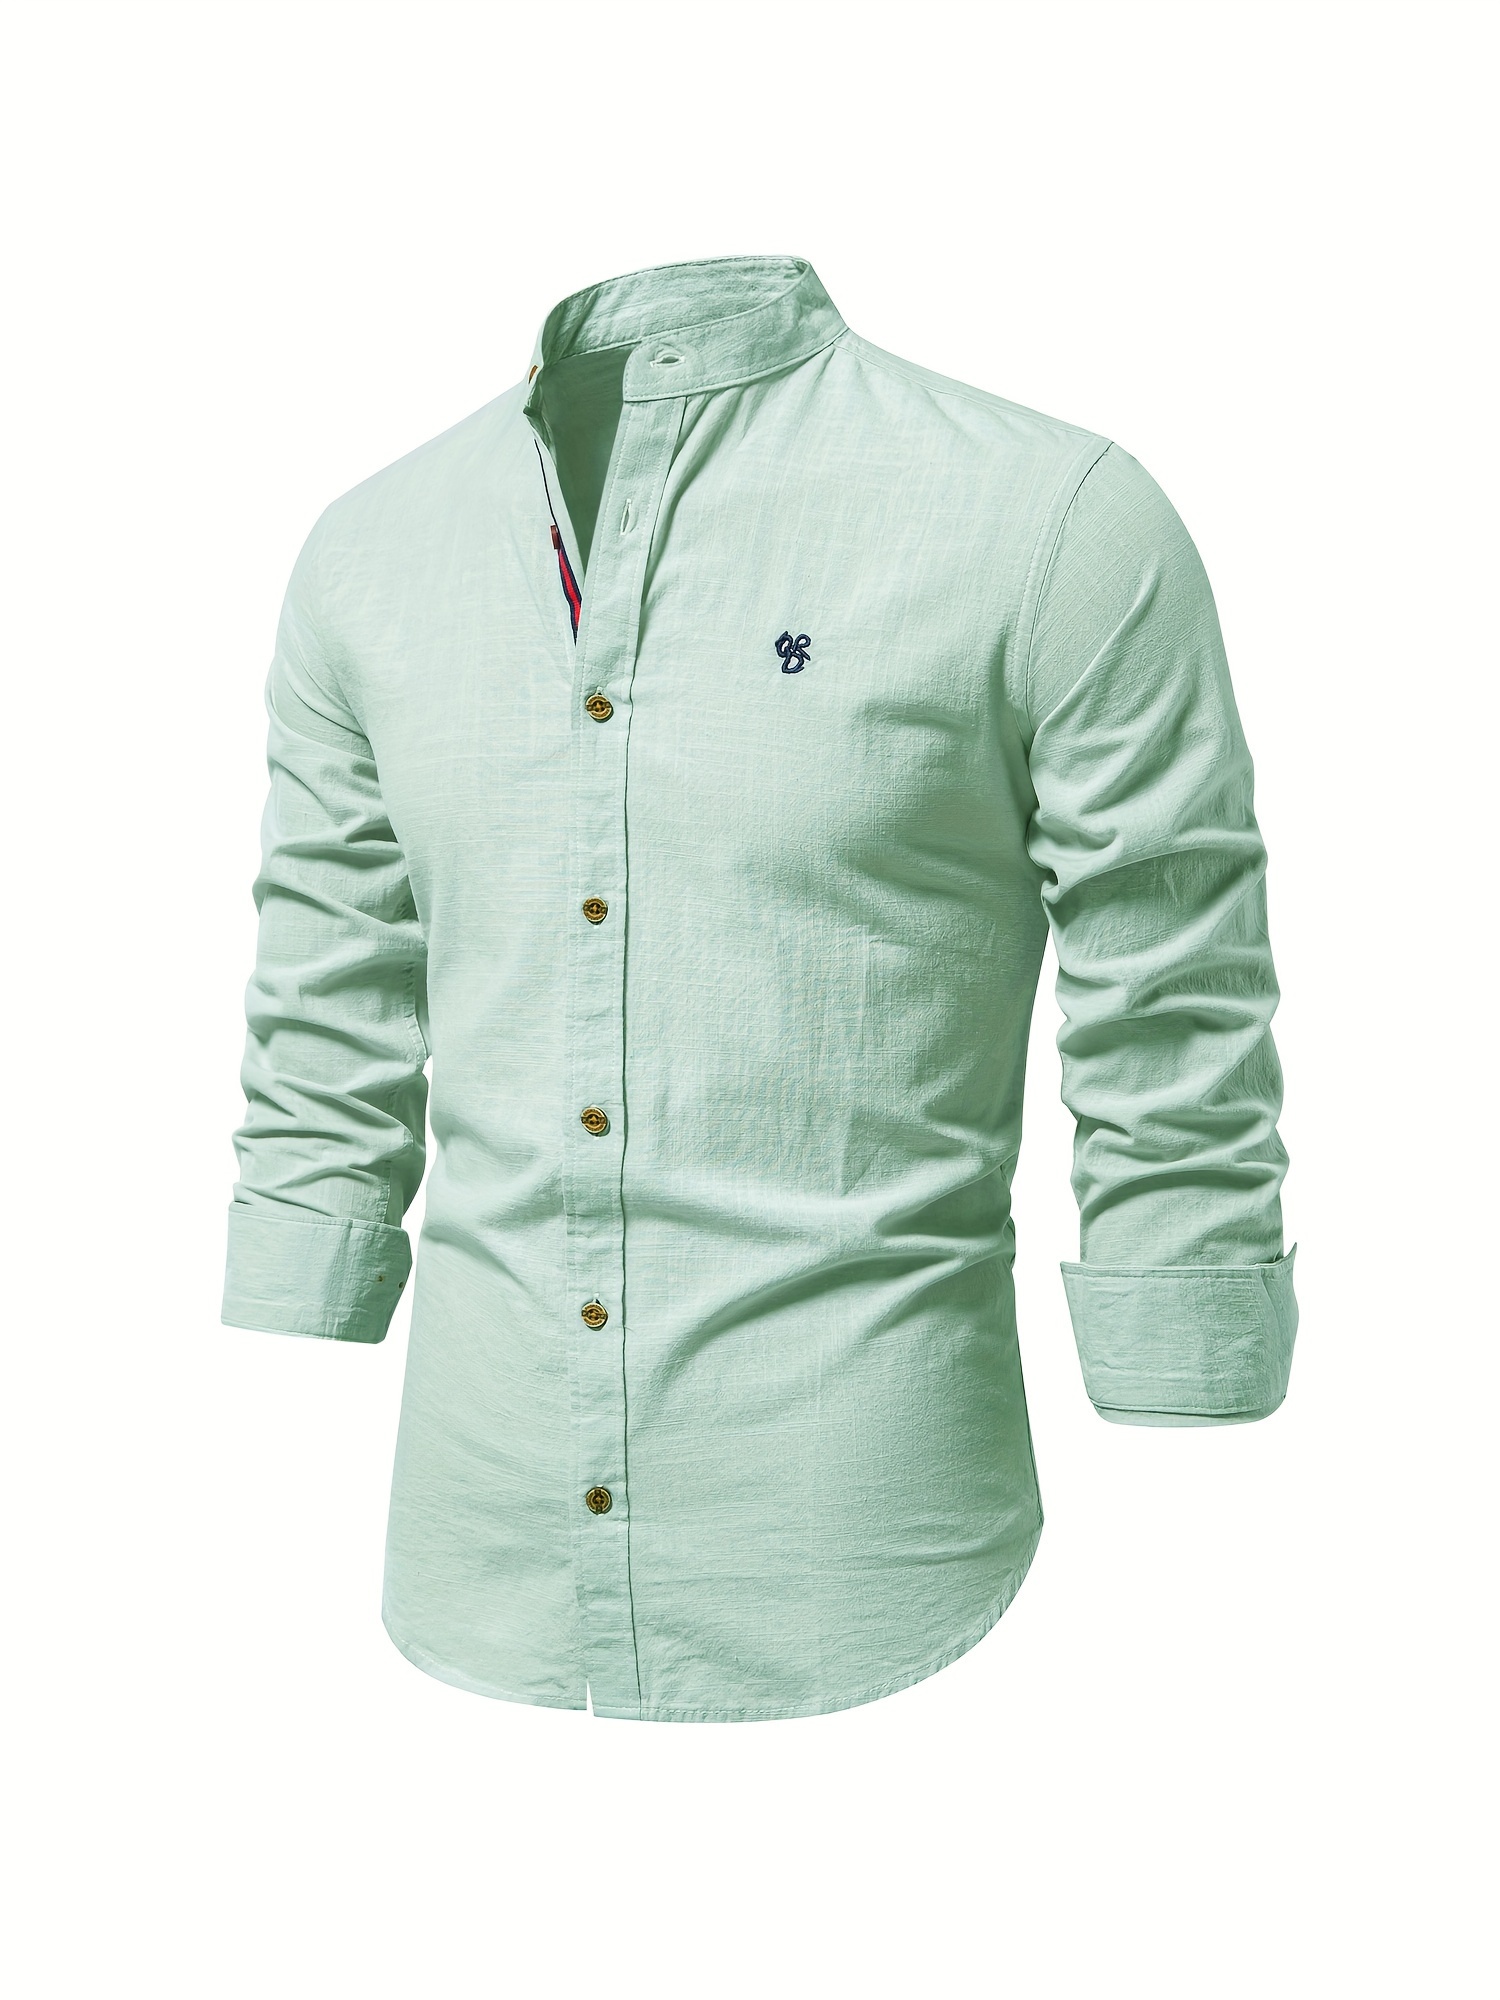 Las mejores ofertas en Camisas de manga larga verde para hombres